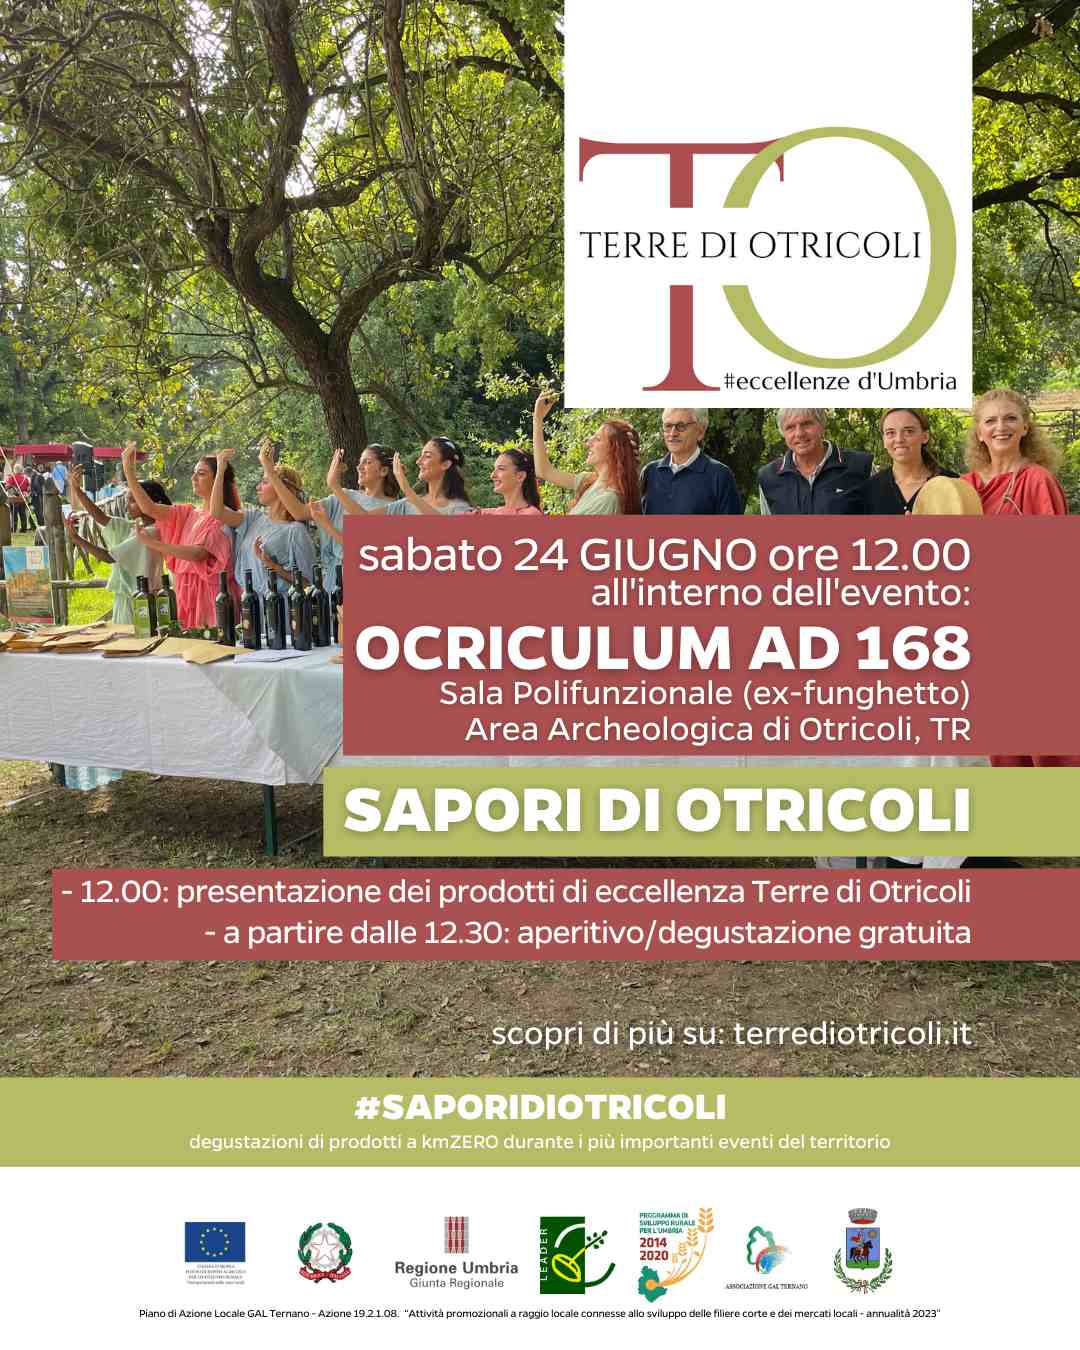 Locandina dell'evento Sapori di Otricoli durante Ocriculum AD 168 2023